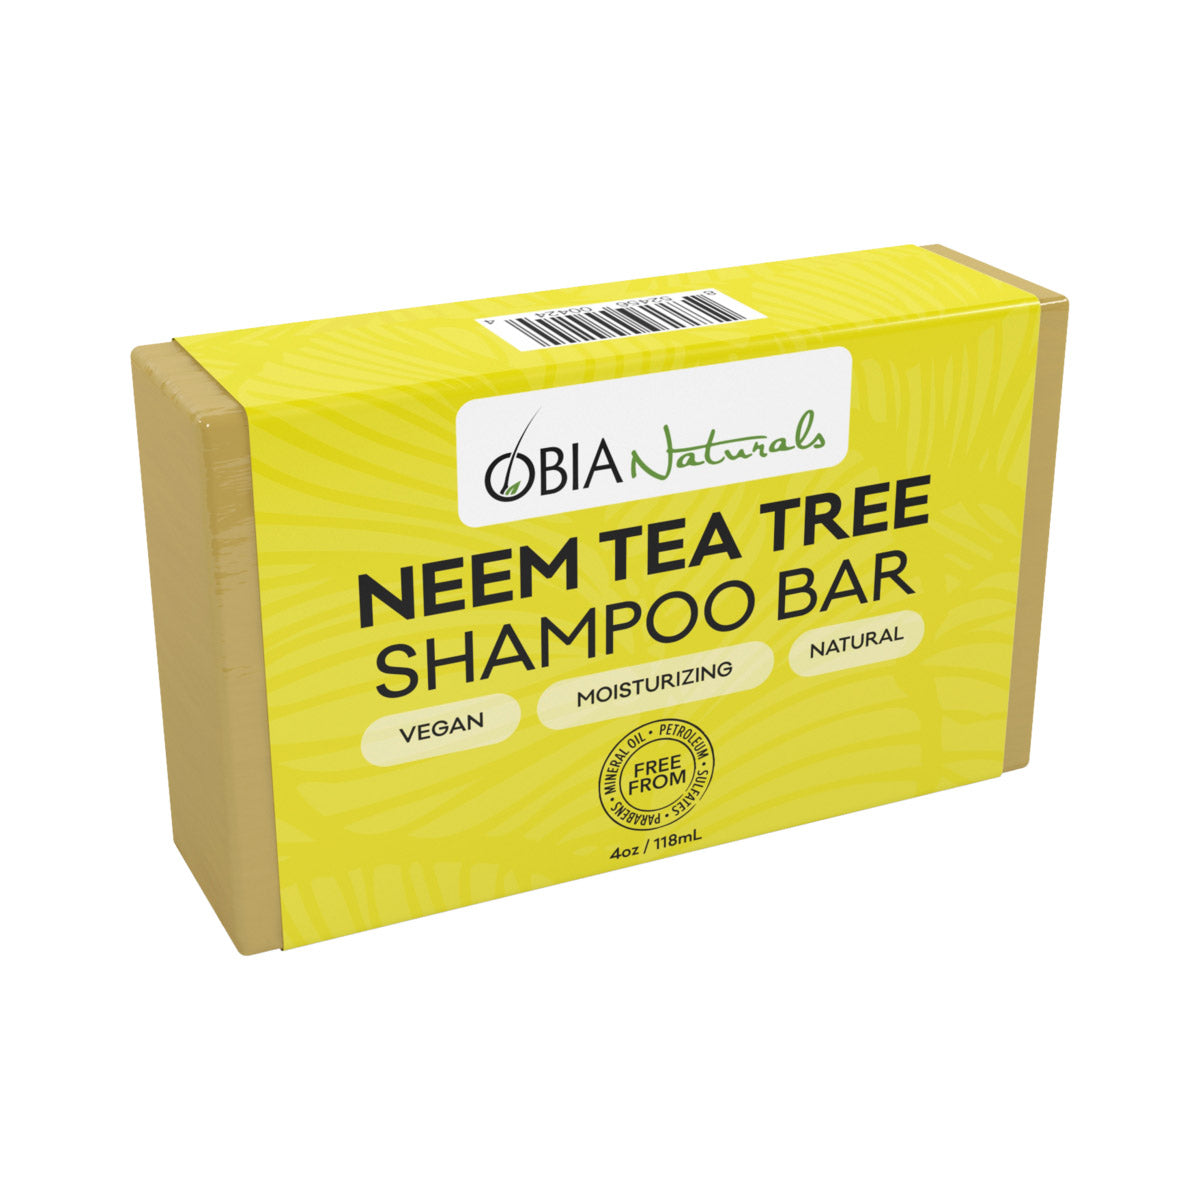 Revigorant et apaisant, le Neem Tea Tree Shampoo Bar d'Obia vous aide à vous débarrasser des pellicules, du psoriasis et des démangeaisons du cuir chevelu.